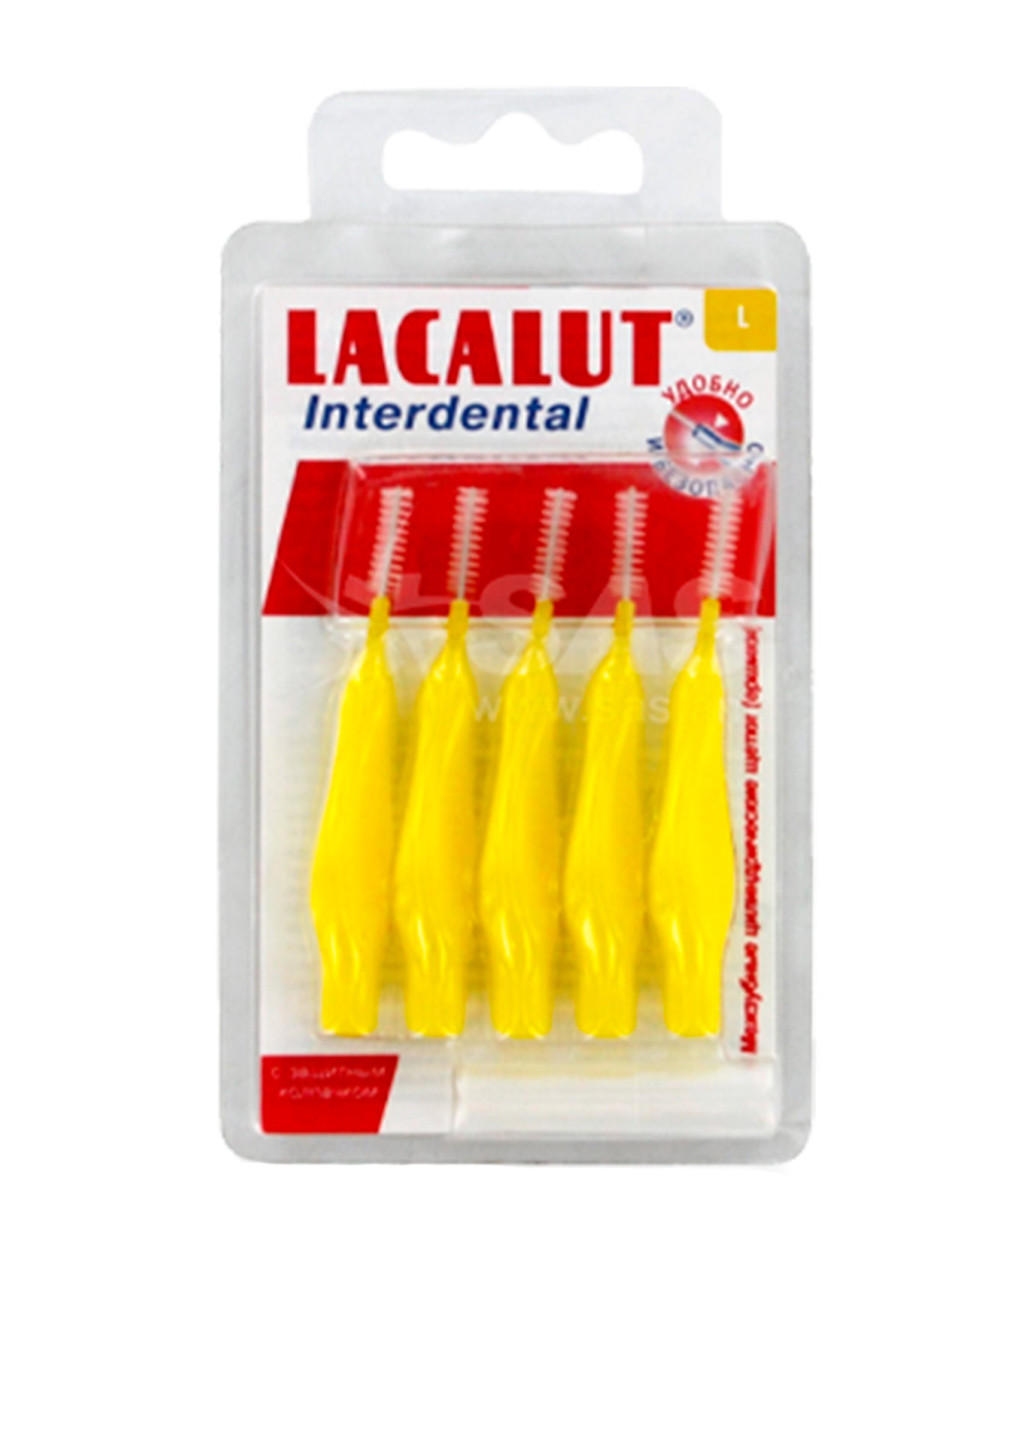 Міжзубні щітки Interdental L, 5 шт. Lacalut (79090978)